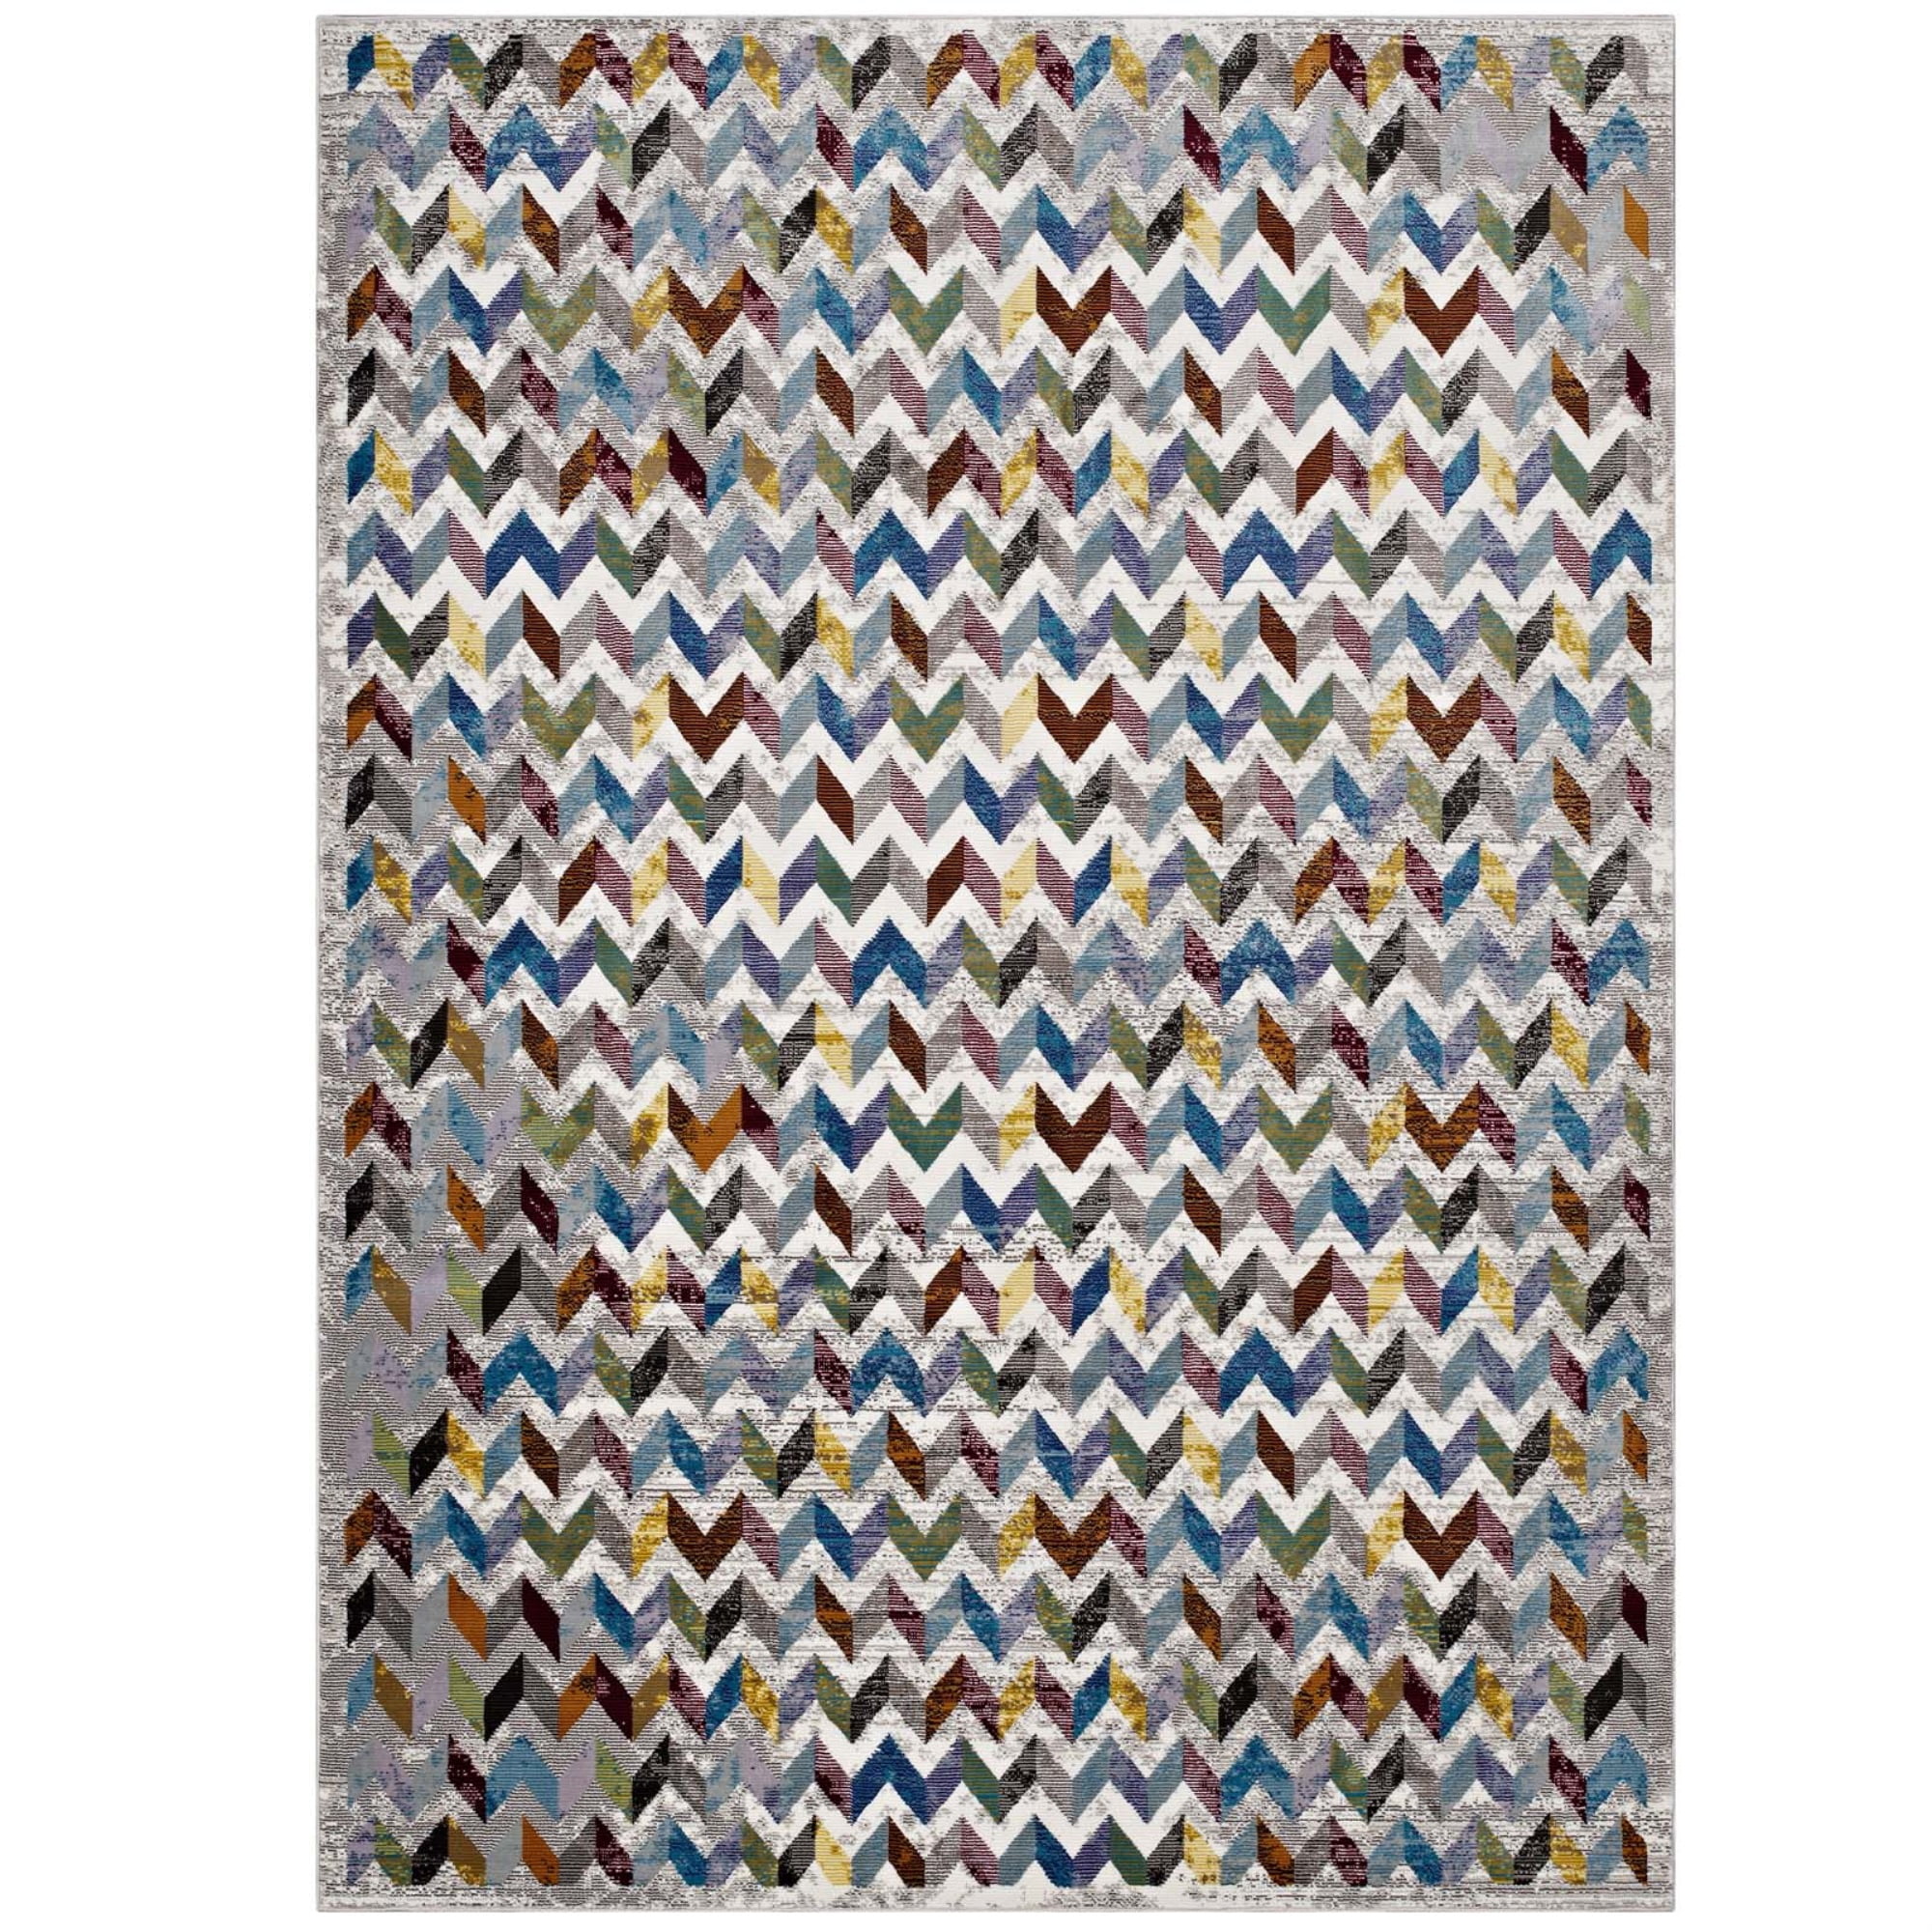 Multicolored Ergode Lavendula Triangle Mosaic 5x8 Area Rug 